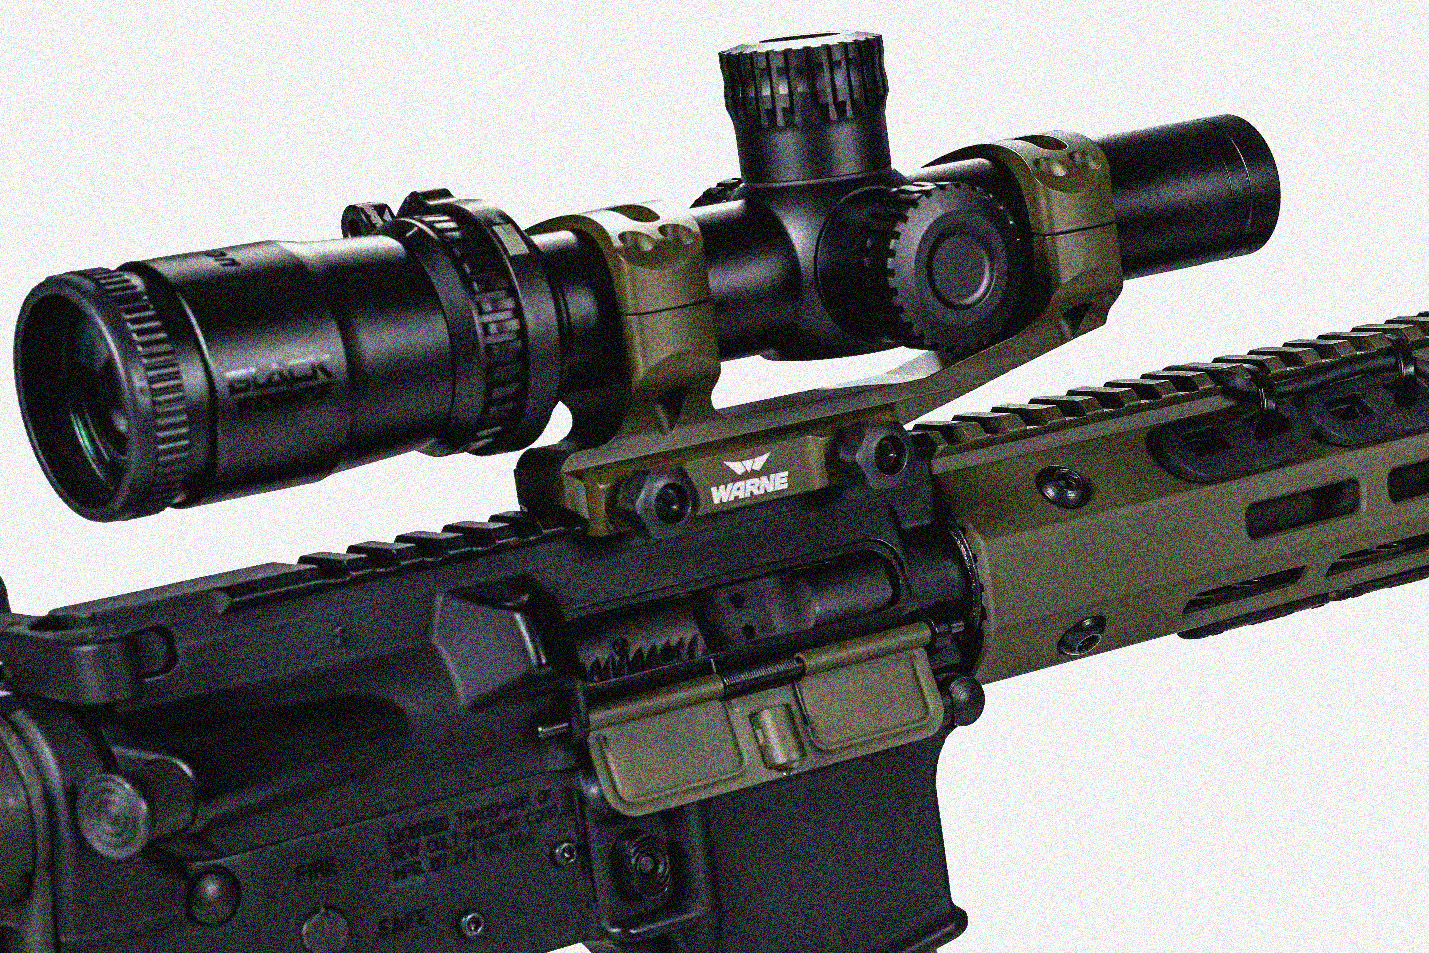 How do you mount a scope on an AR 15?